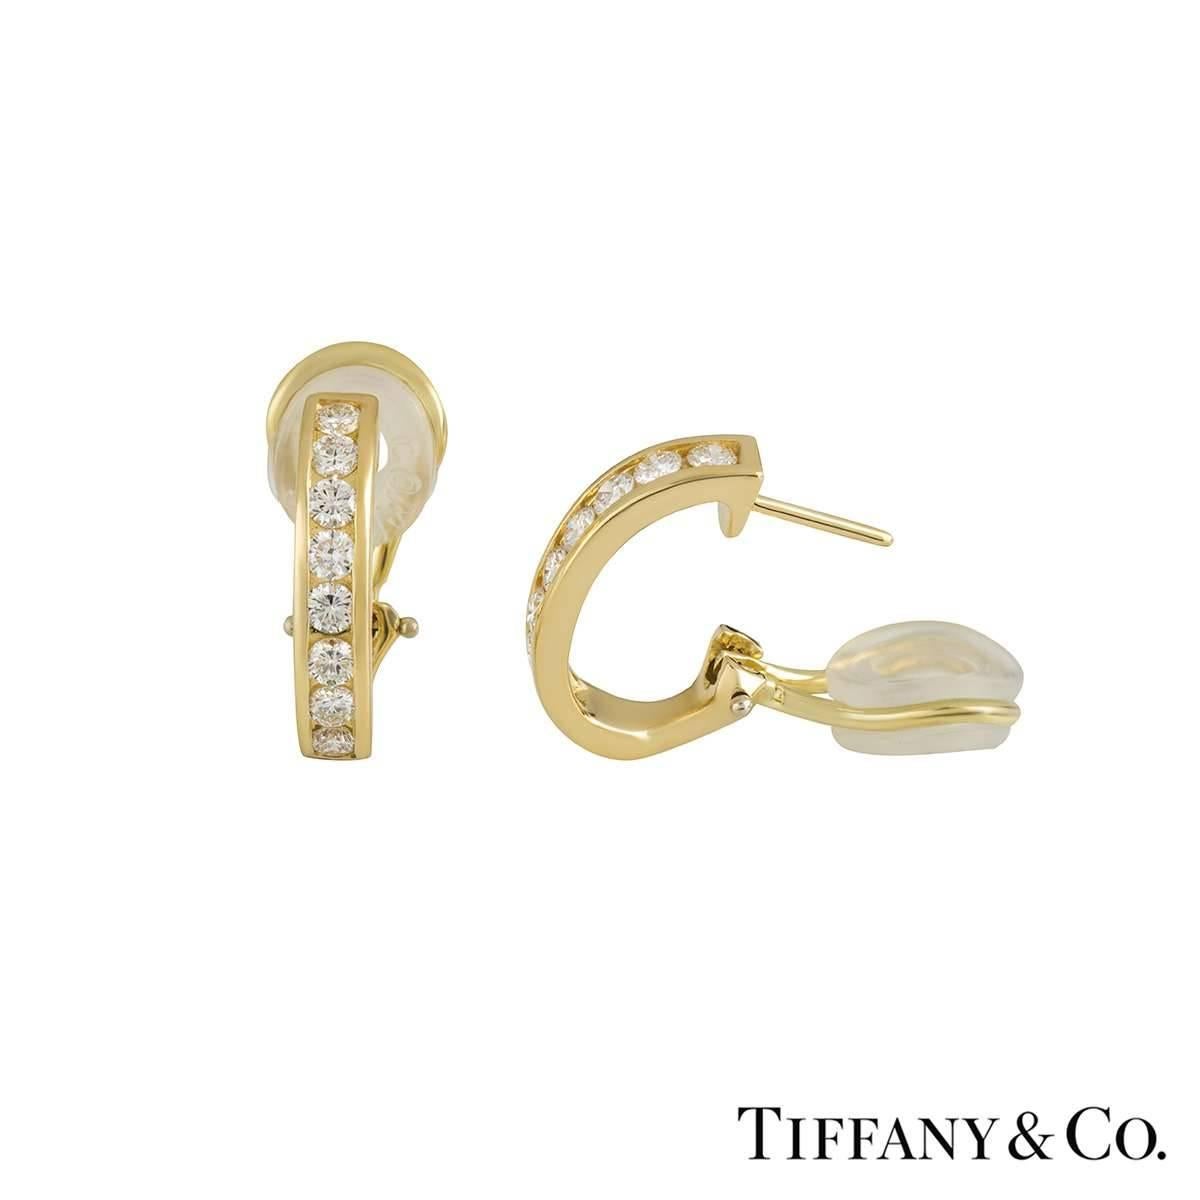 Round Cut Tiffany & Co. Diamond Hoop Earrings 0.96 Carat